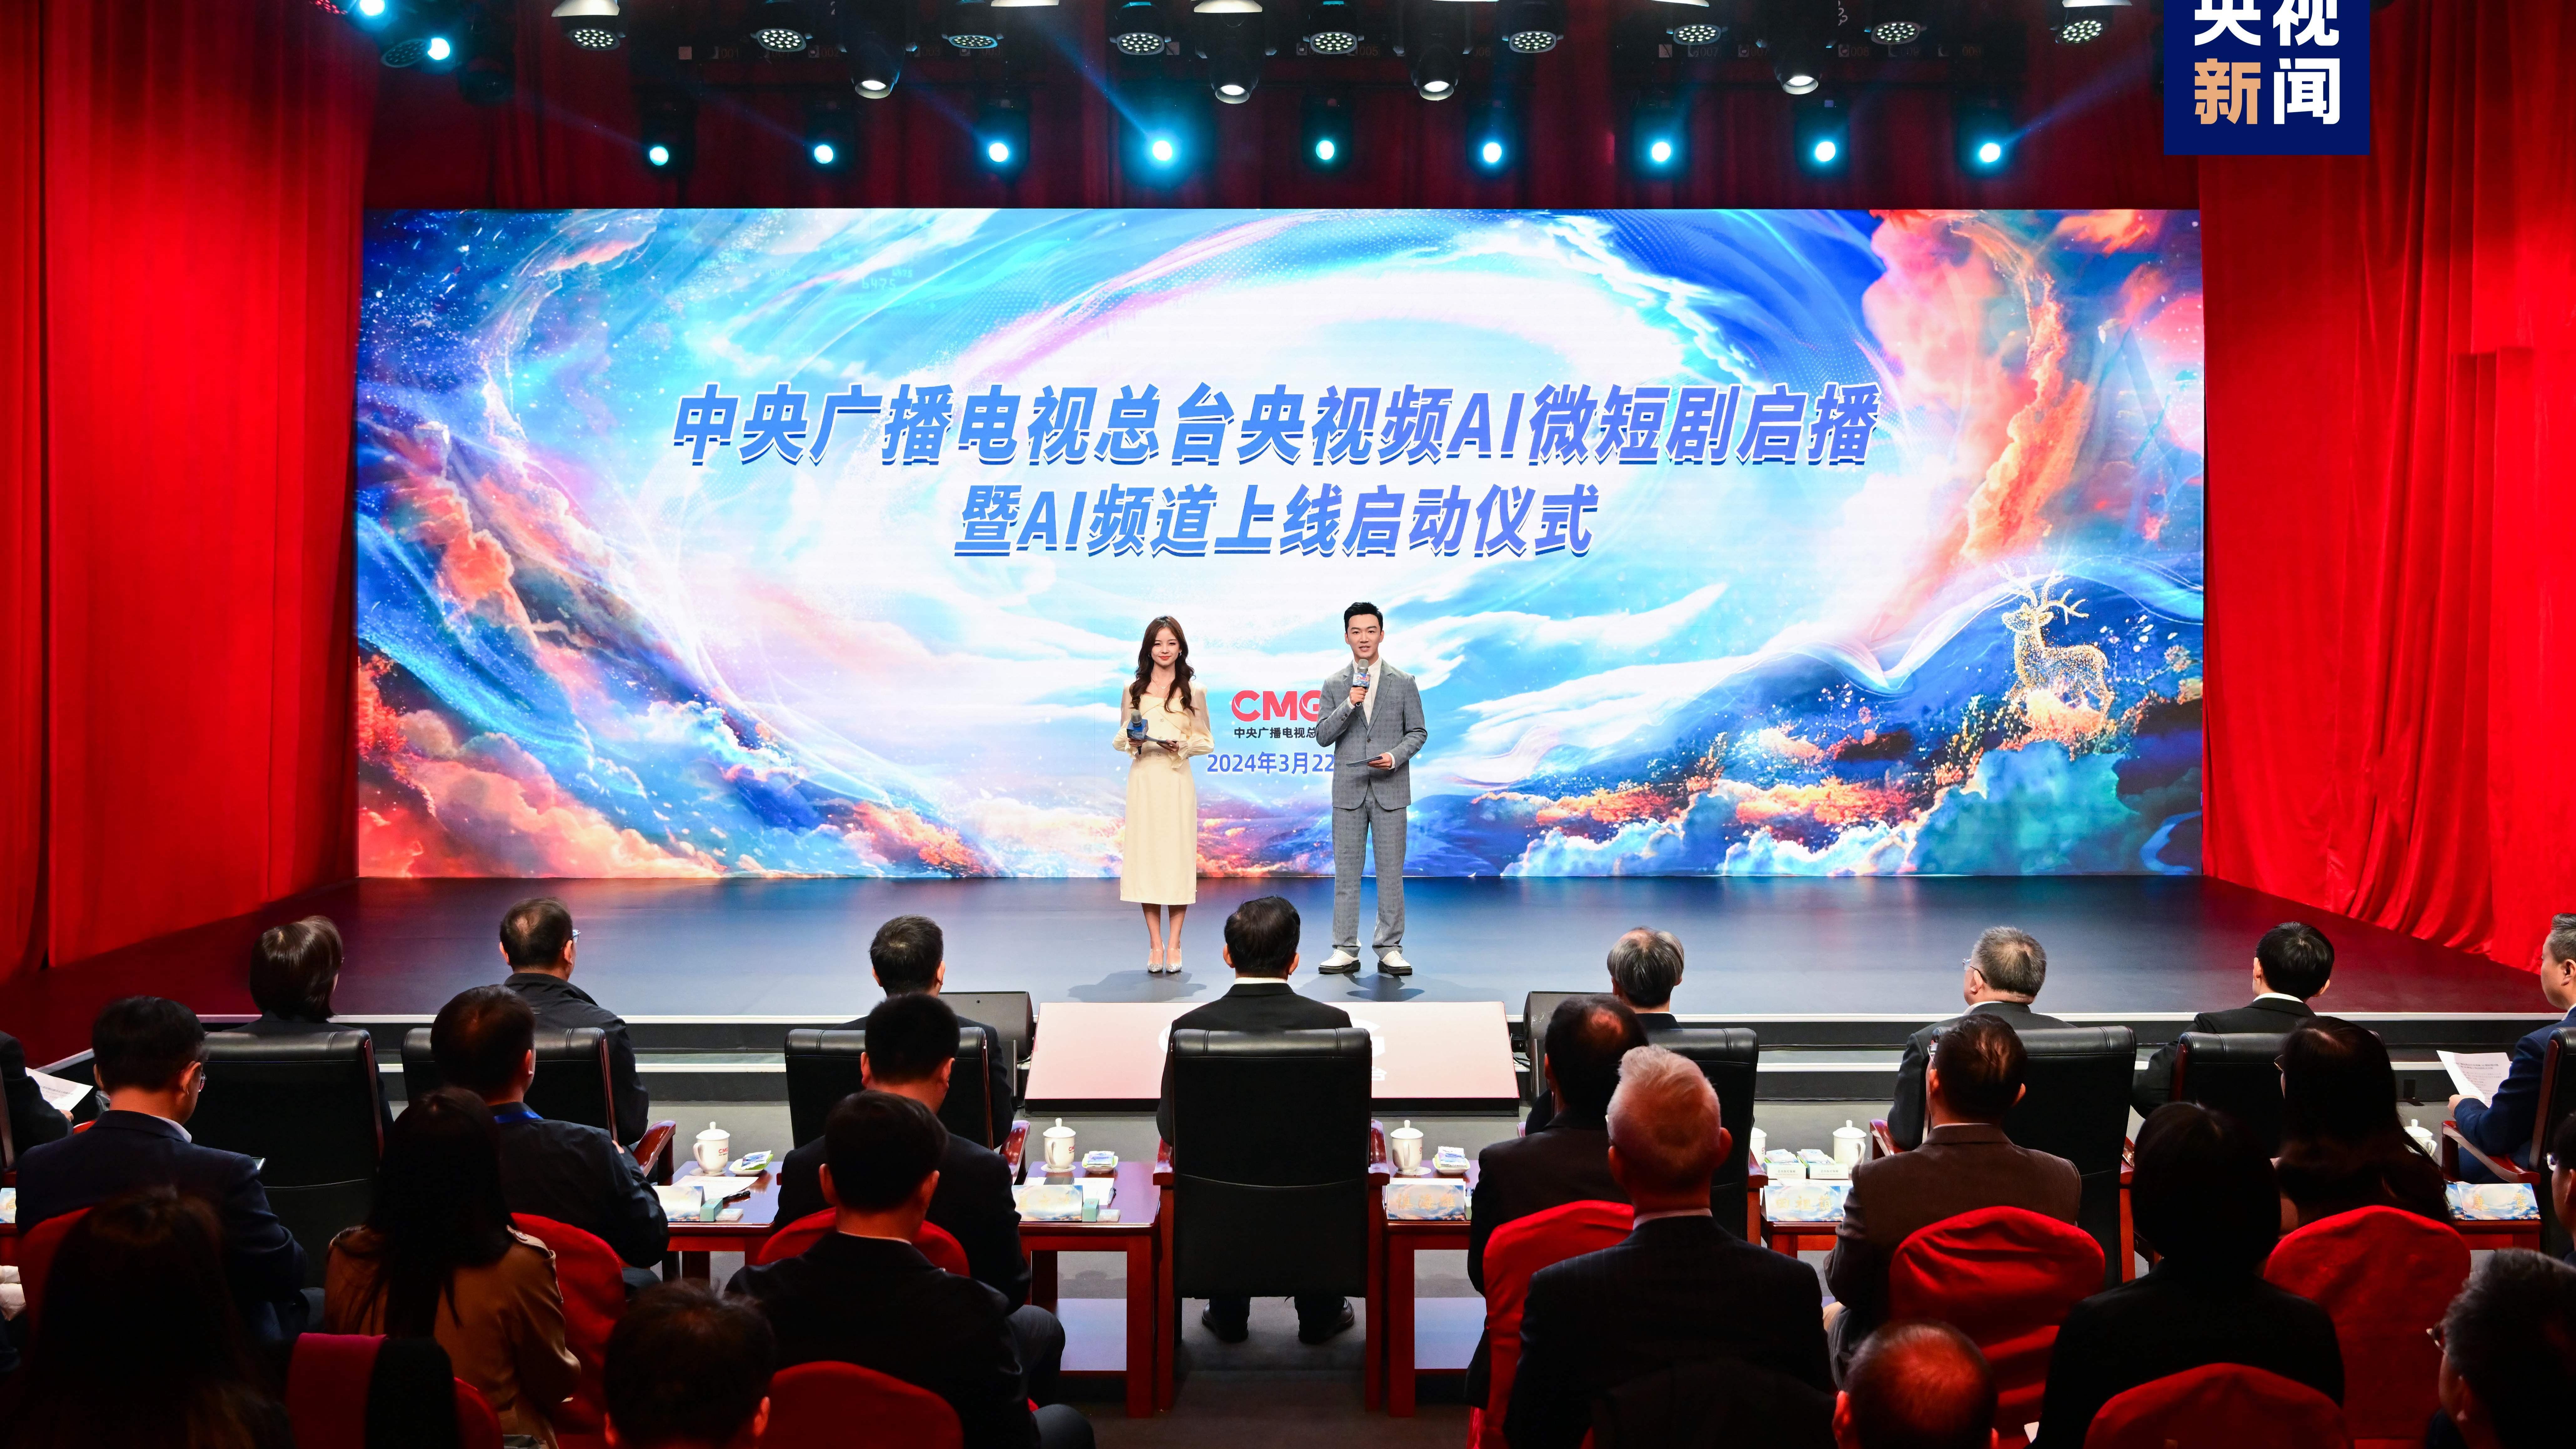 चीनको पहिलो पूर्ण प्रक्रियाको एआई सूक्ष्म नाटक “चिनियाँ पौराणिक कथा” सार्वजनिक